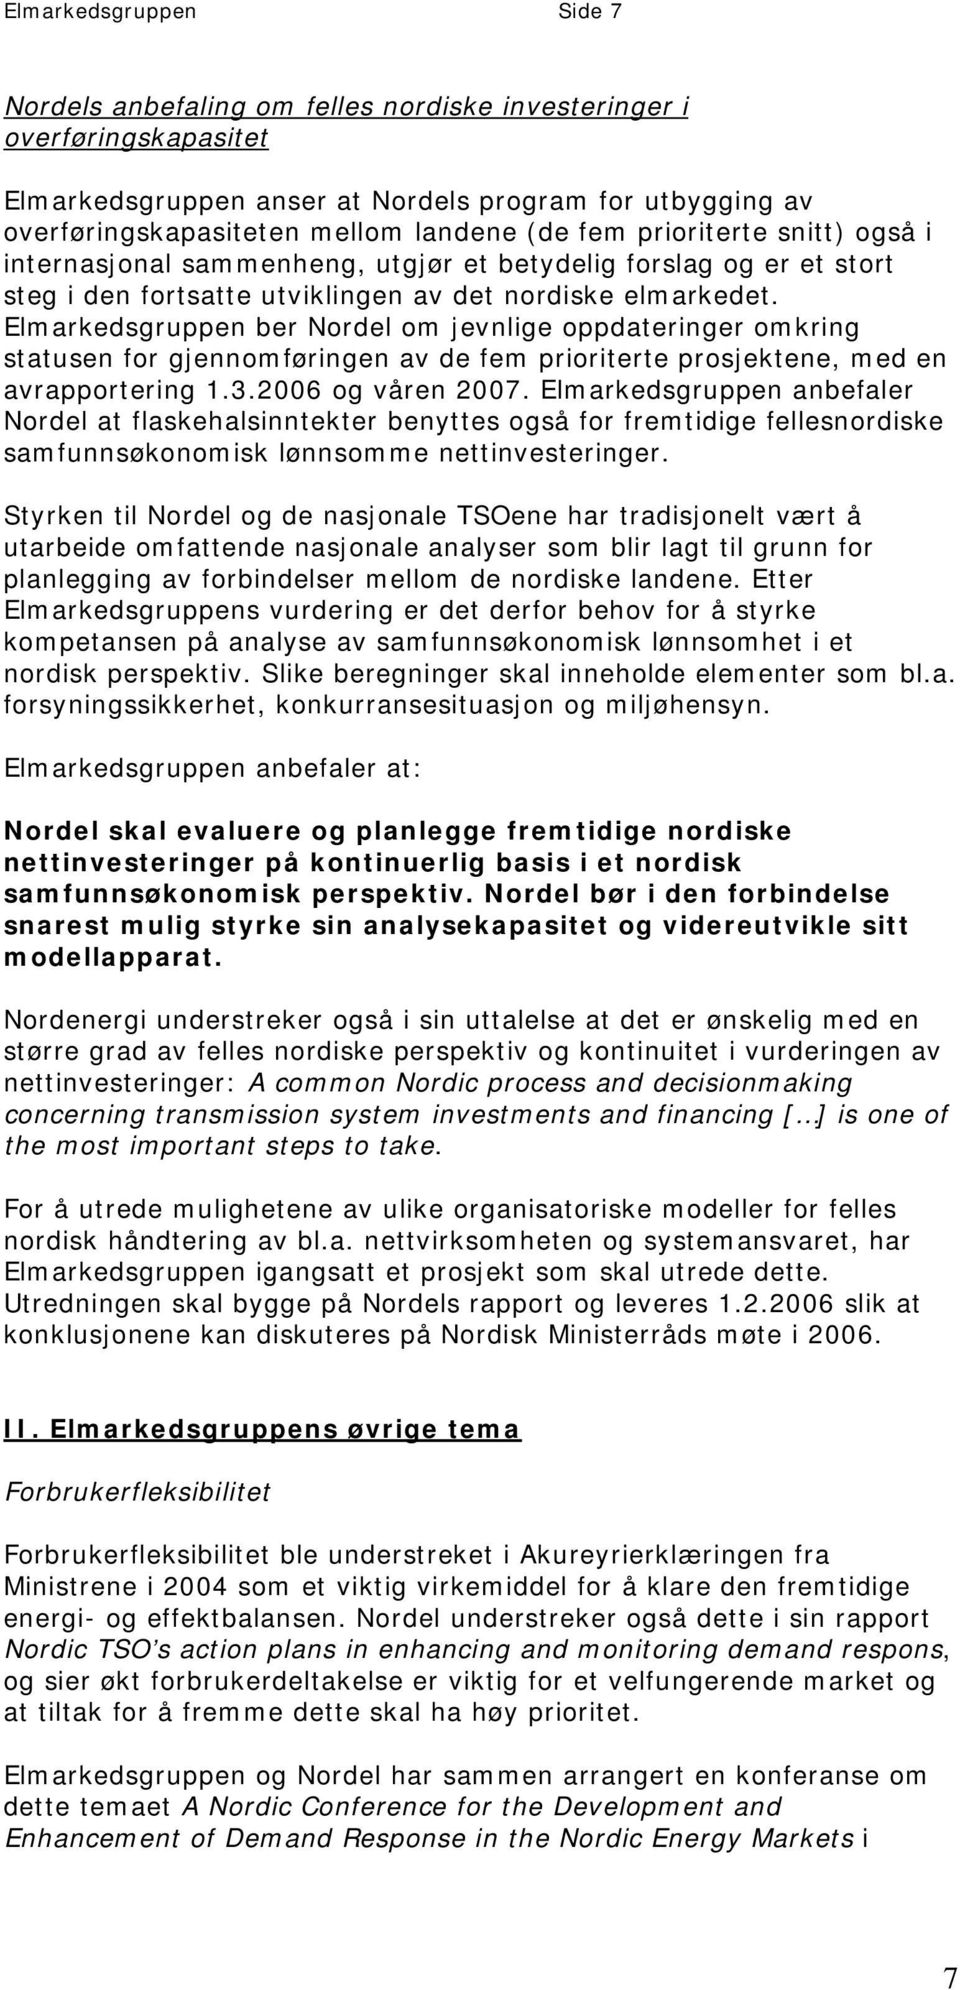 Elmarkedsgruppen ber Nordel om jevnlige oppdateringer omkring statusen for gjennomføringen av de fem prioriterte prosjektene, med en avrapportering 1.3.2006 og våren 2007.